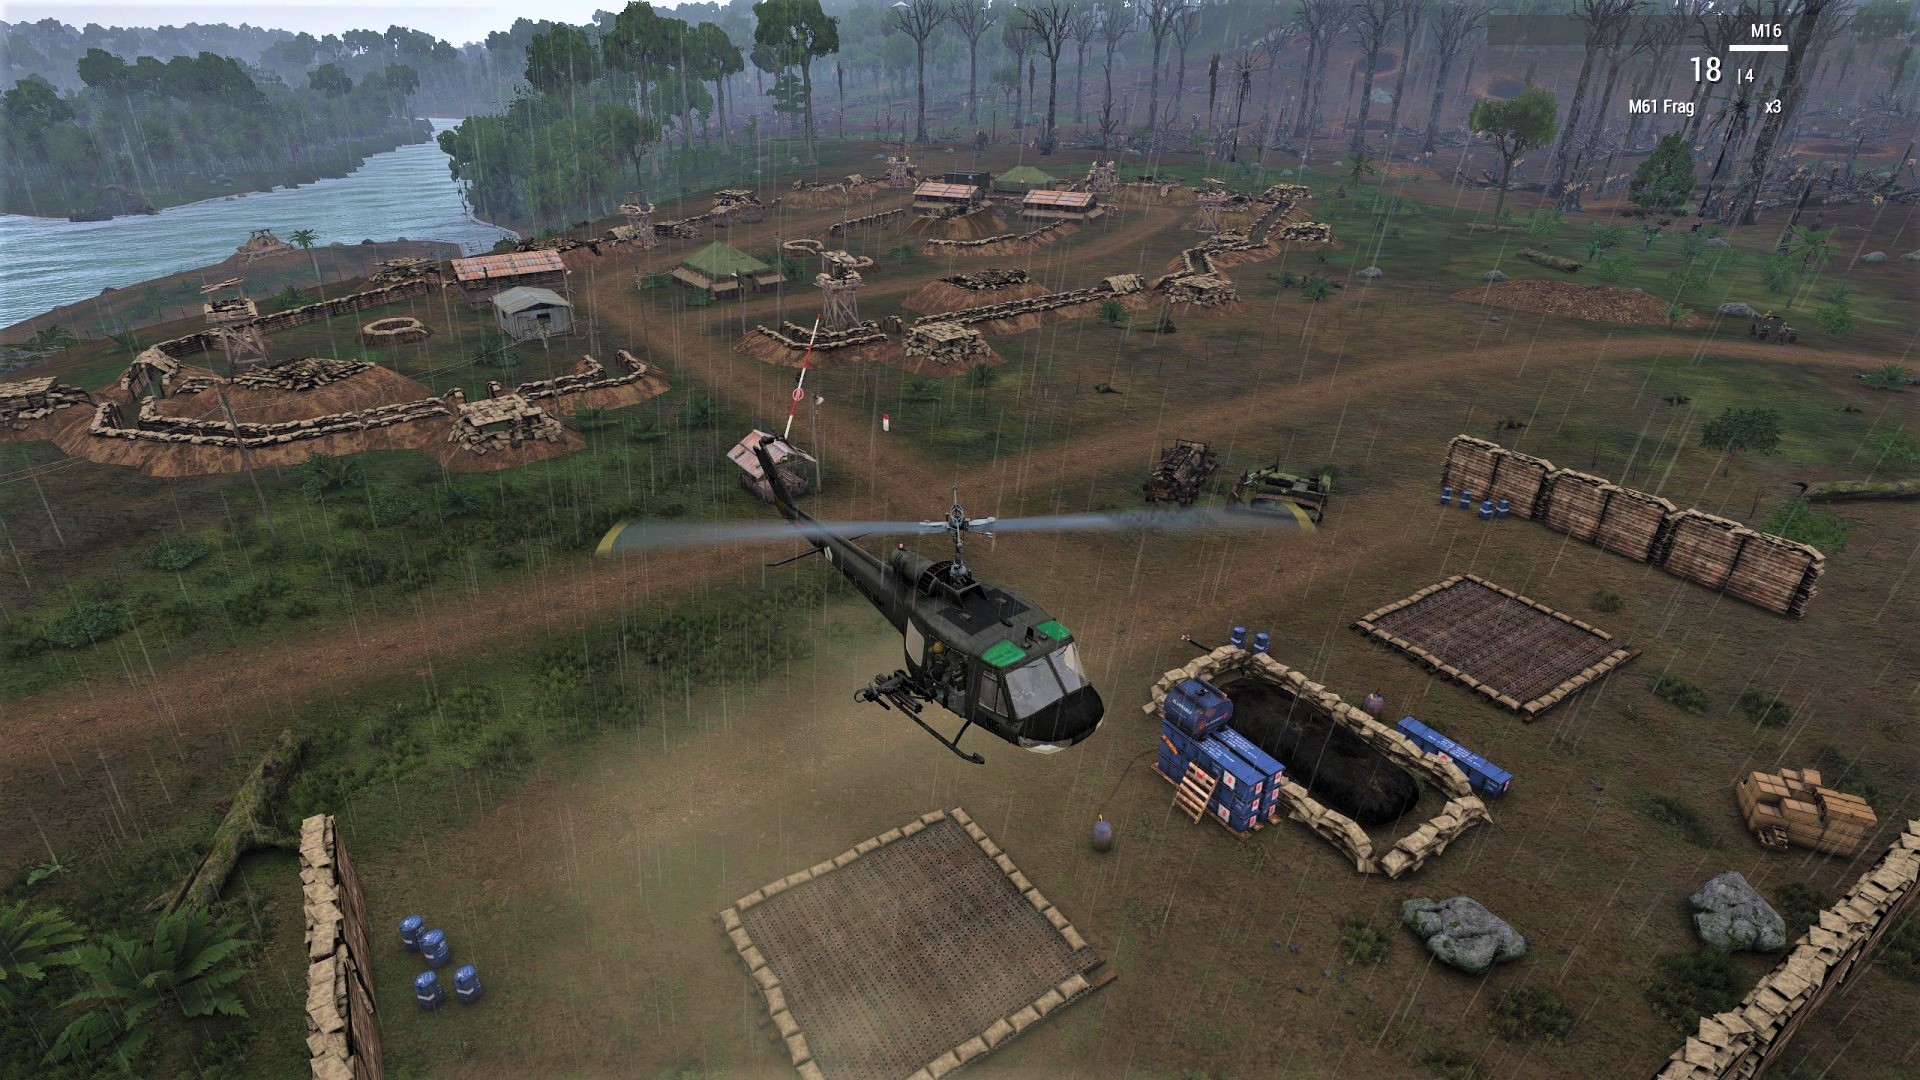 Arma 3 Vietnam Realism - Operation ELDEST SON 